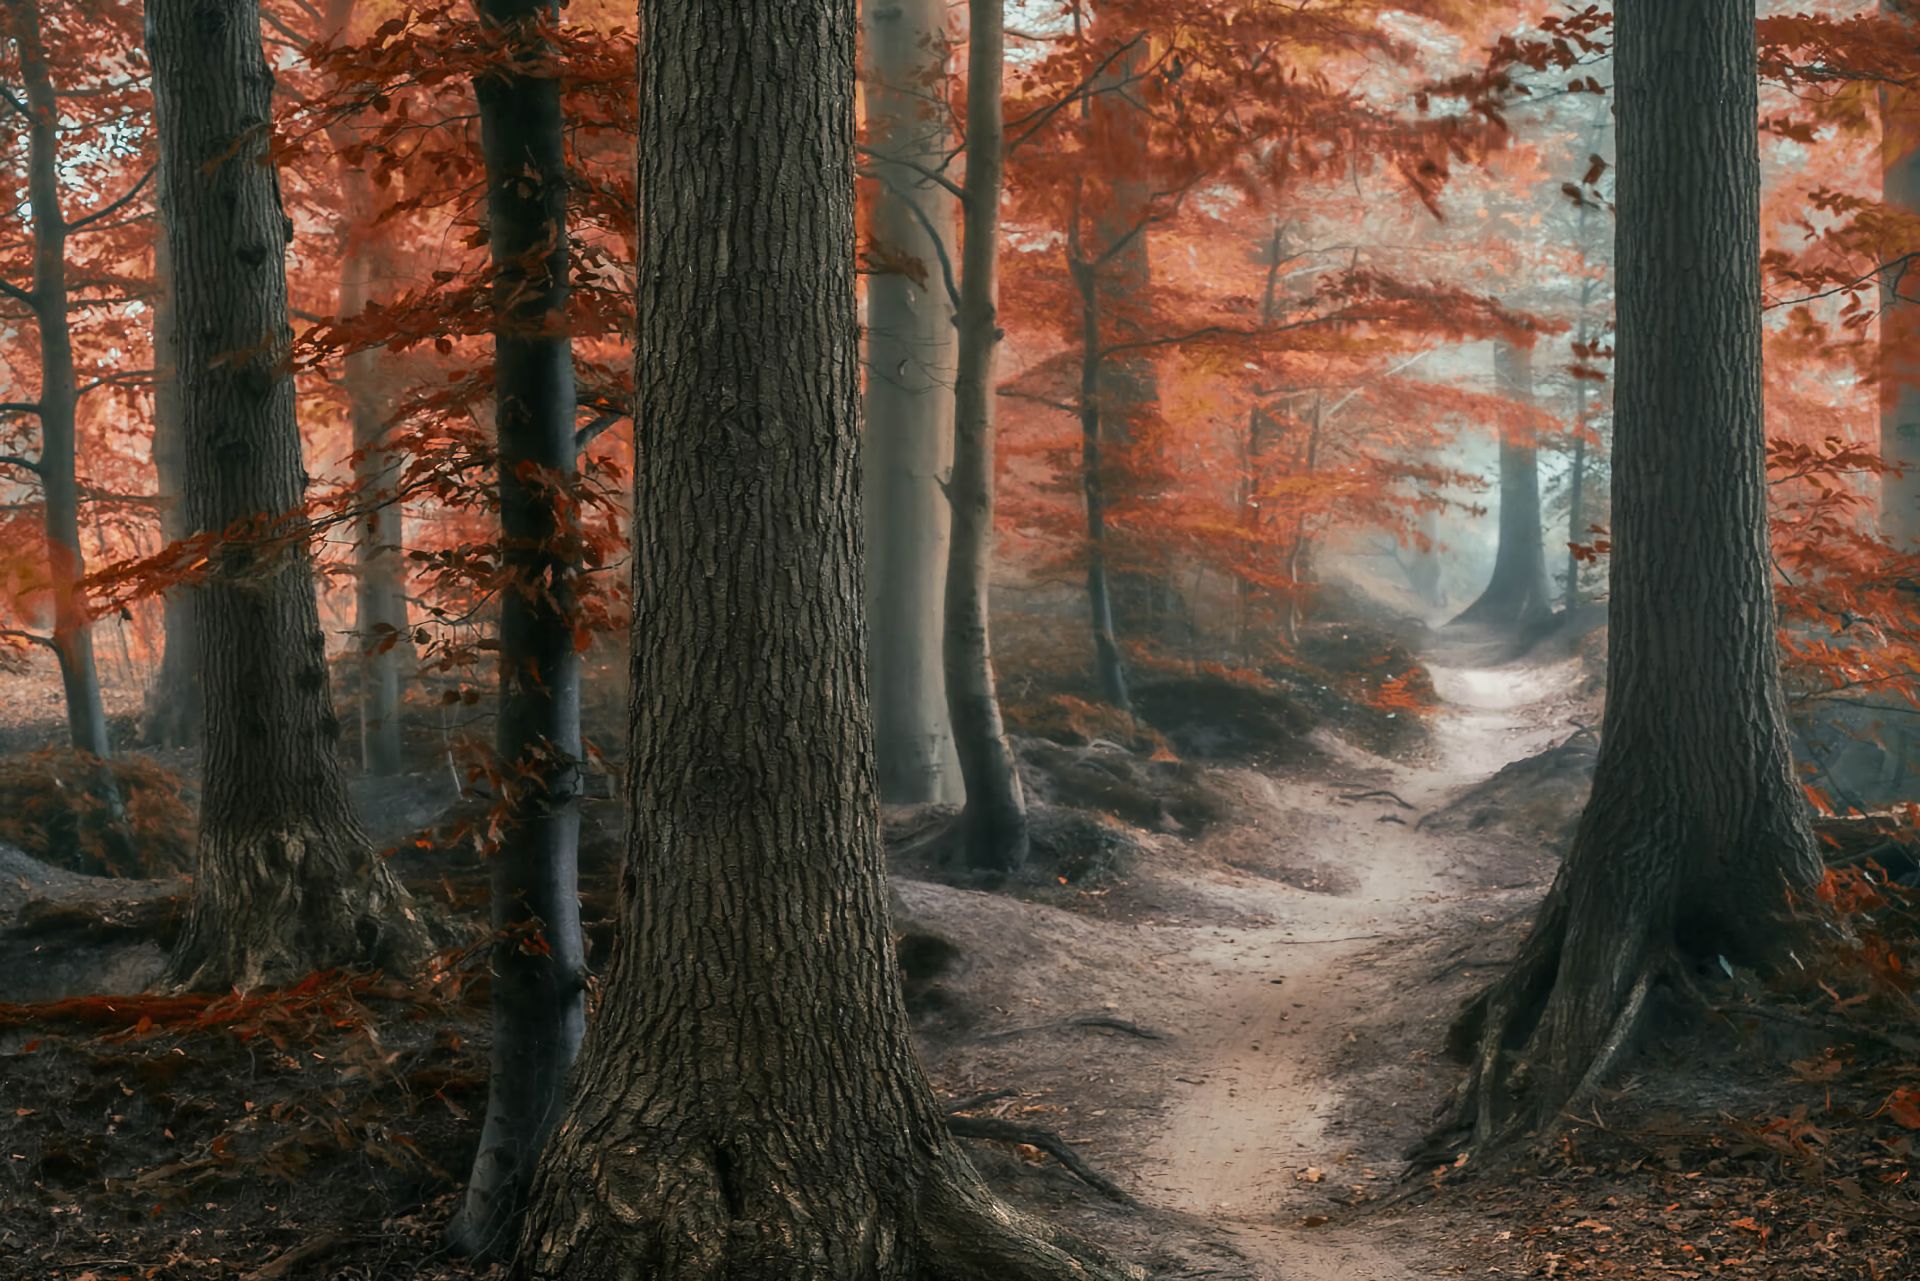 Скачать обои бесплатно Осень, Лес, Дерево, Туман, Дорожка, Земля/природа картинка на рабочий стол ПК